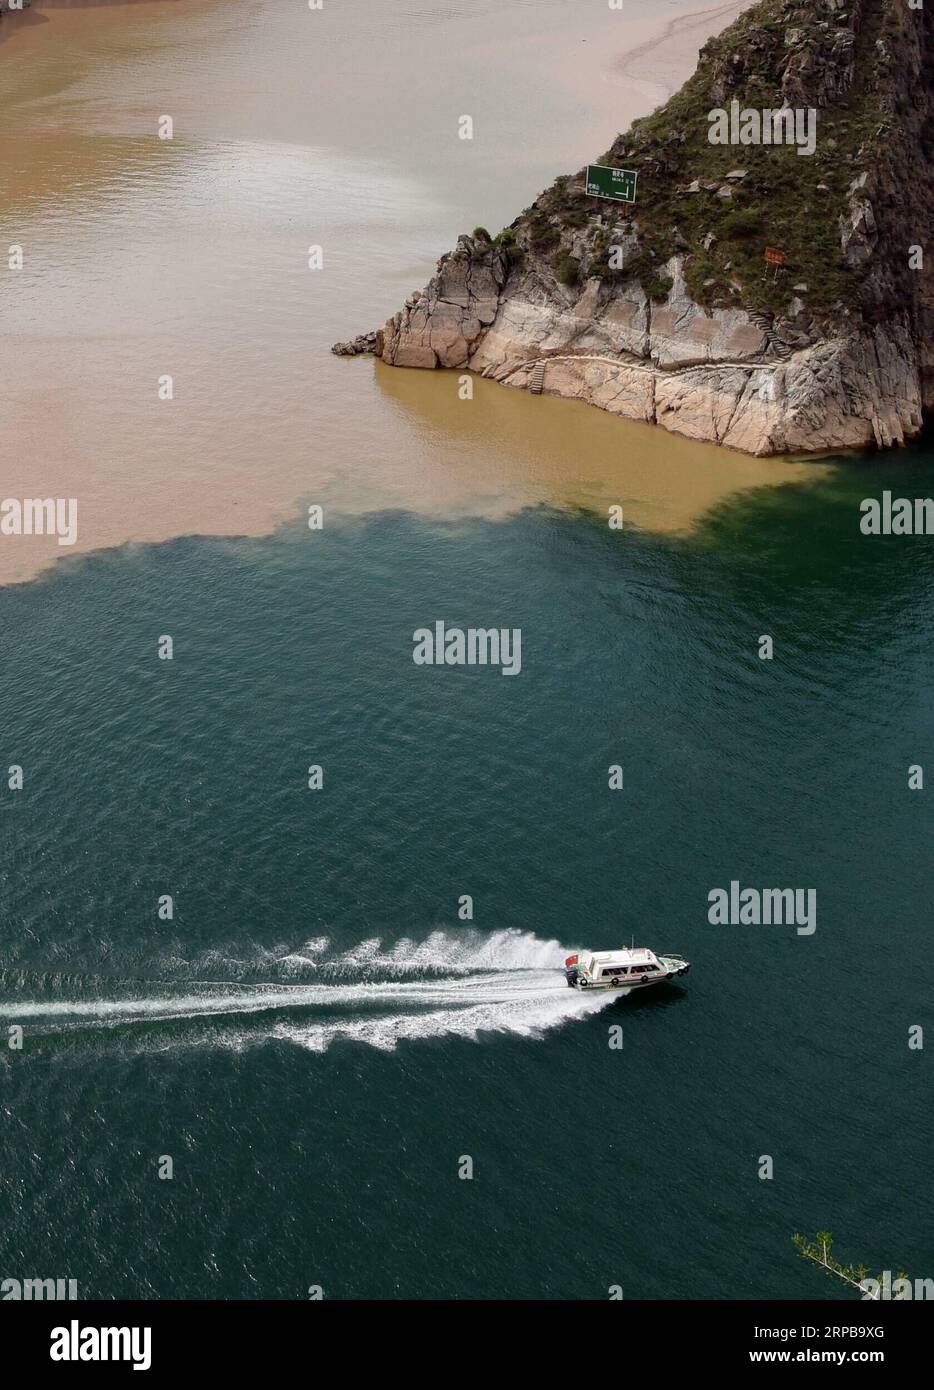 (190602) -- YONGJING, 2. Juni 2019 (Xinhua) -- Foto vom 2. Juni 2019 zeigt eine Yacht, die im Liujiaxia Reservoir im Yongjing County, nordwestlich der chinesischen Provinz Gansu segelt. Ein scharfer Farbkontrast zeigt sich deutlich, wenn sich zwei Flüsse, der seilfreie Yellow River und der dazugehörige Taohe River, der mit viel Schlamm und Sand fließt, im Liujiaxia Reservoir treffen, das weithin für sein klares Wasser bekannt ist. (Xinhua/Ma Ning) CHINA-GANSU-YONGJING-LIUJIAXIA STAUSEE-LANDSCHAFT (CN) PUBLICATIONxNOTxINxCHN Stockfoto